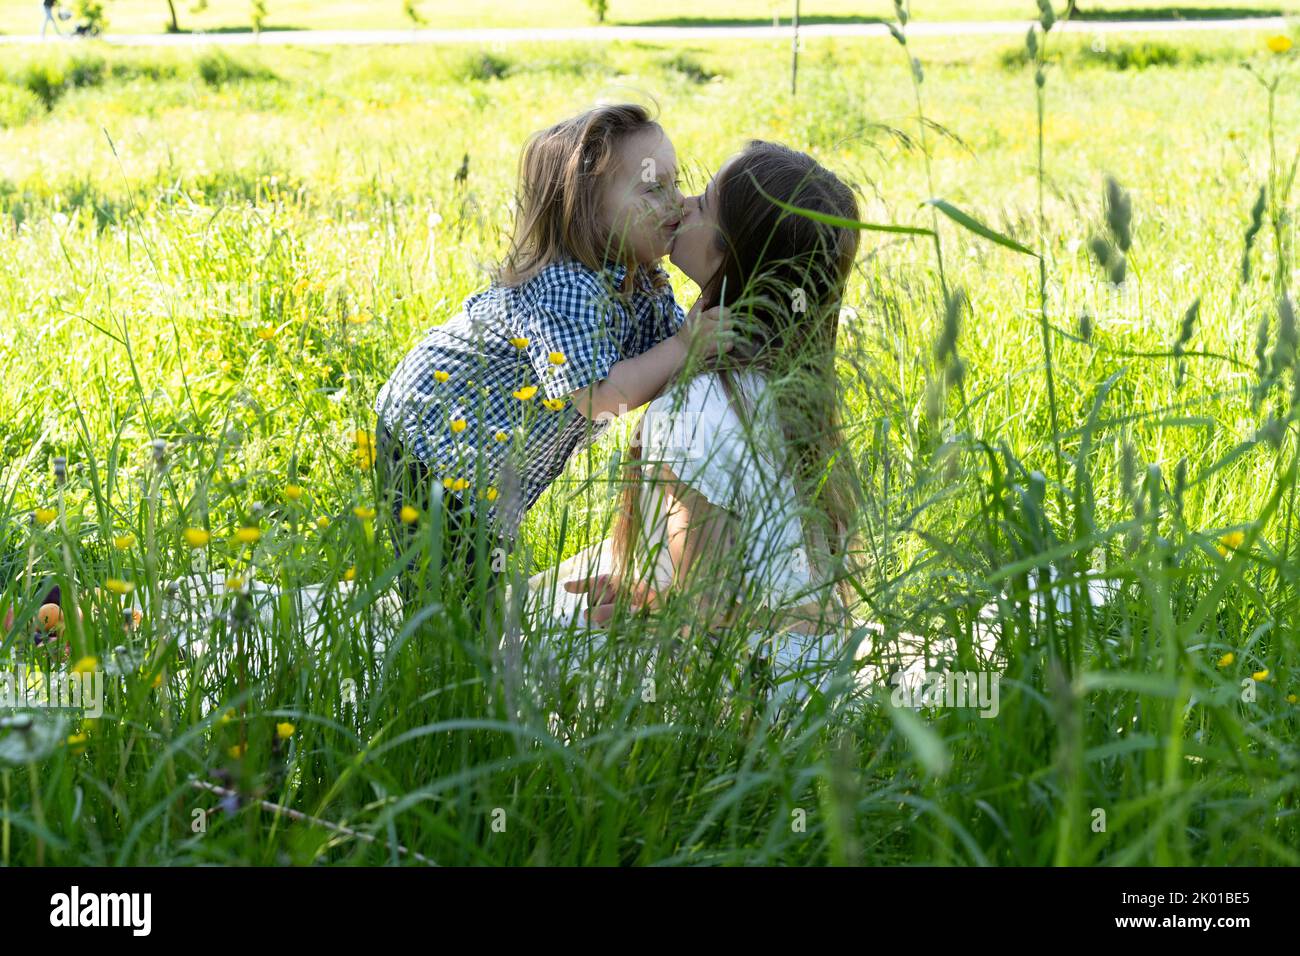 Bruder und Schwester spielen und küssen im Park inmitten des grünen Grases. Kinder umarmen sich fest. Picknick außerhalb der Stadt. Kindheit. Beziehungen. Stockfoto